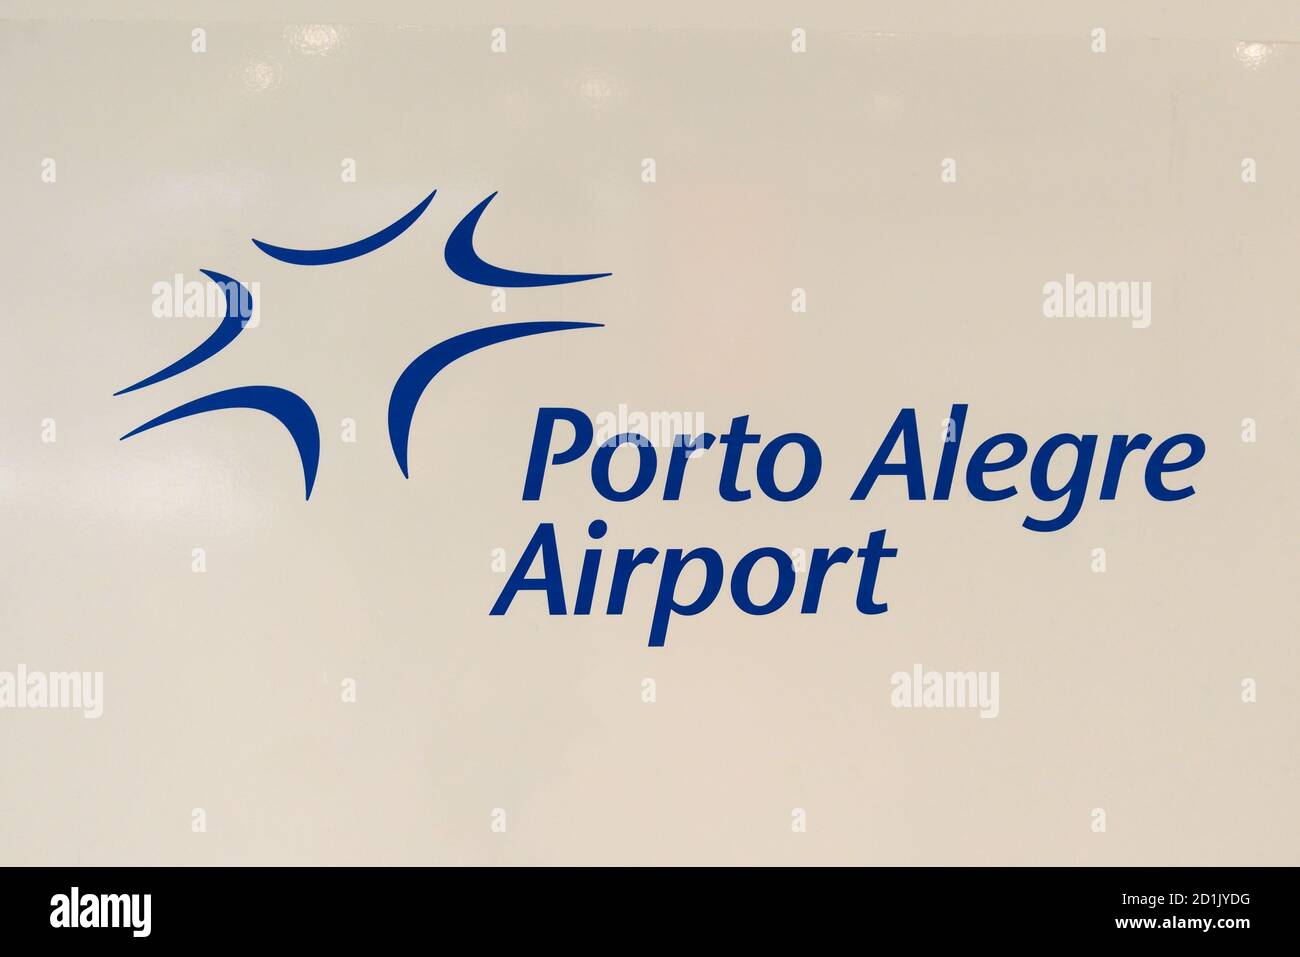 Porto Alegre Airport logo. Fraport Brazil title. Stock Photo